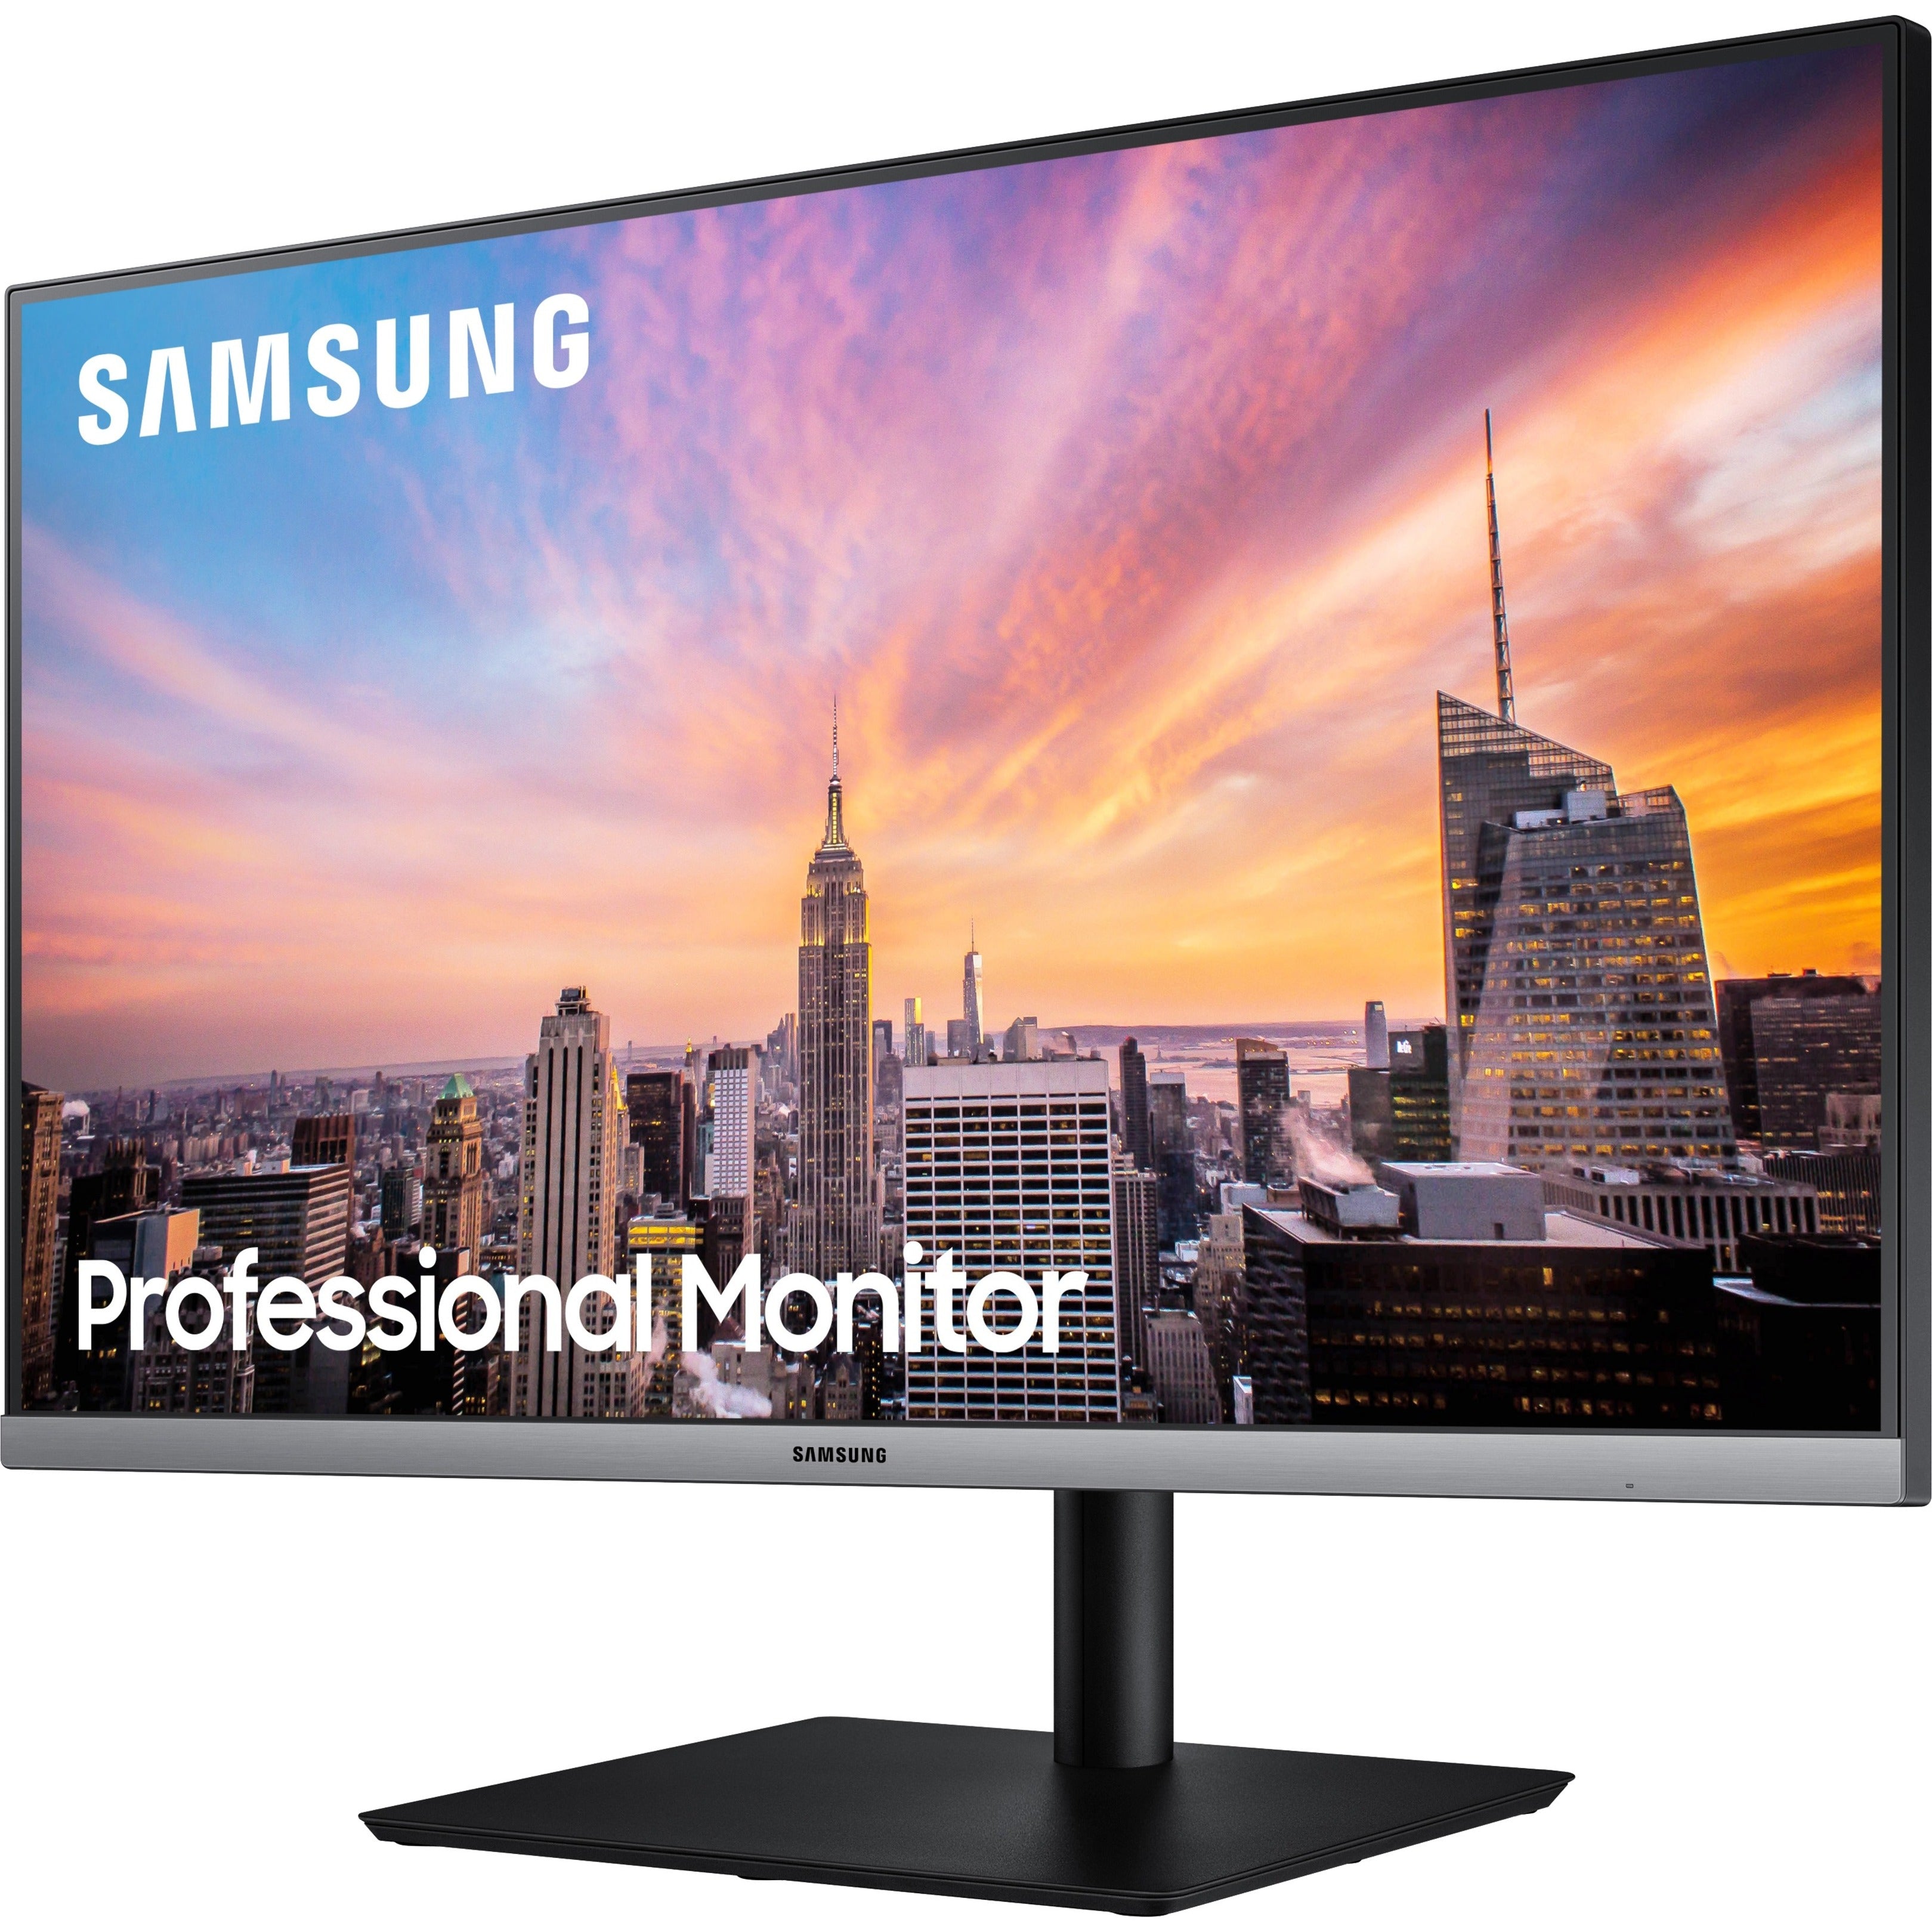 Samsung S27R650FDN SR650 Series Business Monitor, 27 Full HD LCD Monitor - Dark Blue Gray, USB Hub, HDMI, DisplayPort